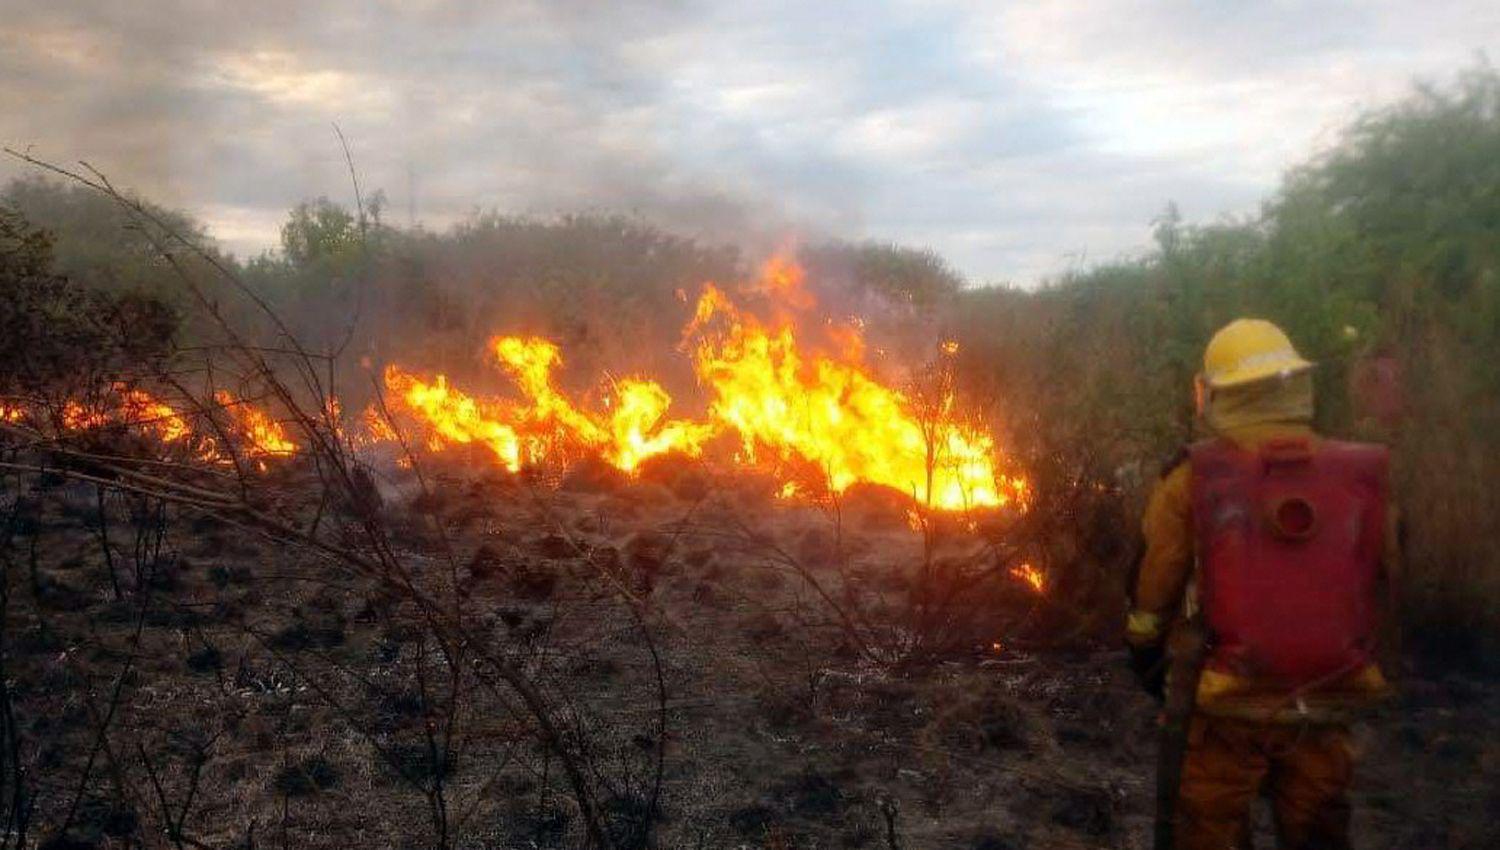 Piden adoptar medidas de seguridad para evitar los incendios forestales